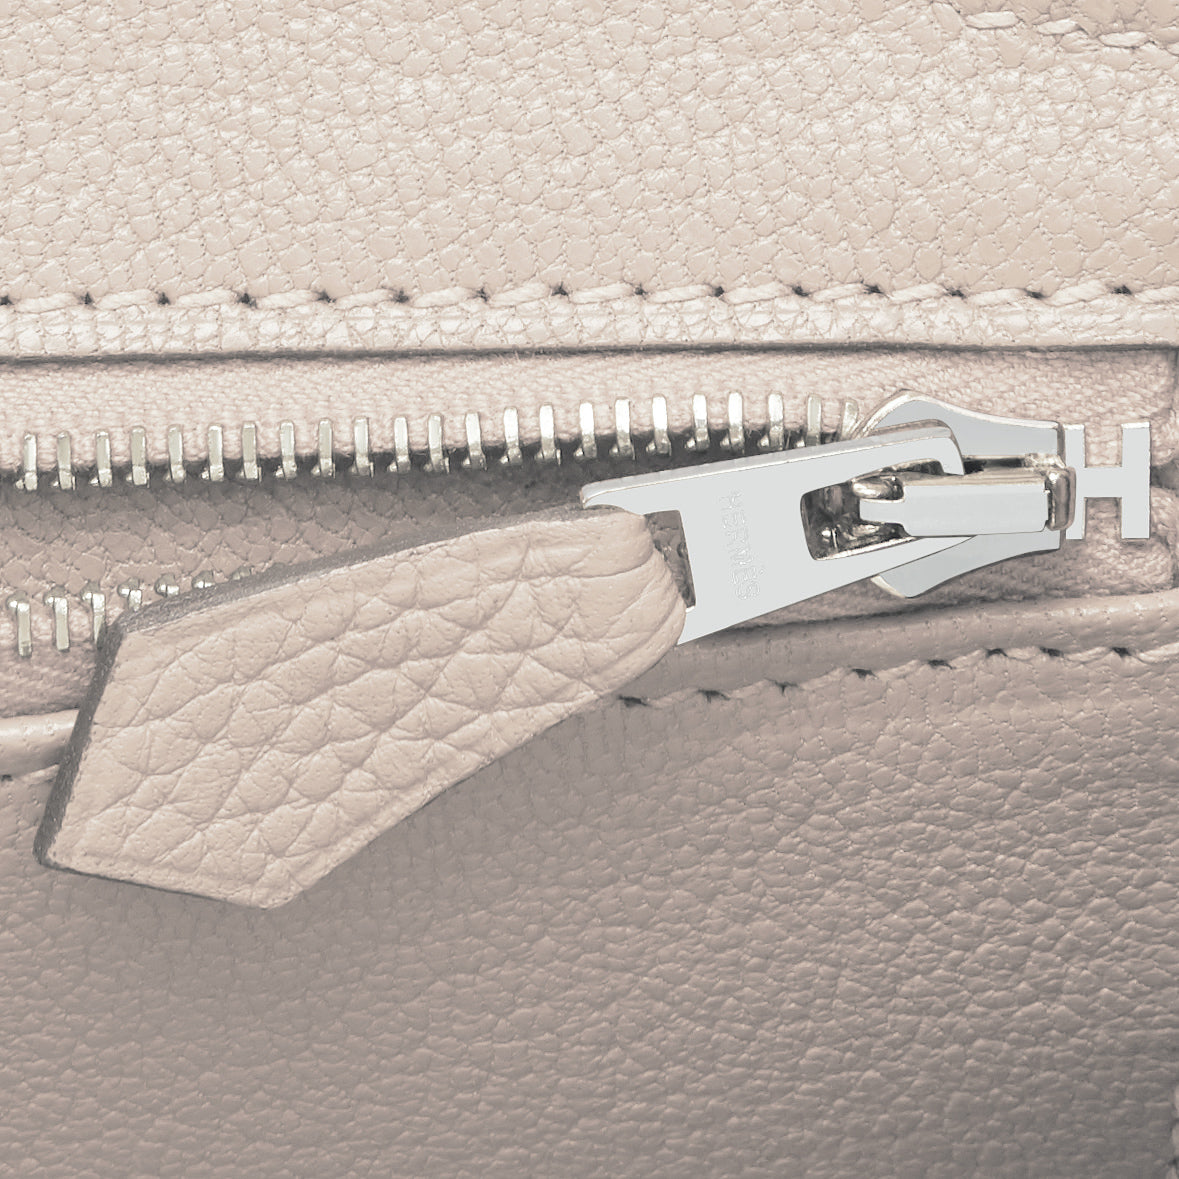 Craie Birkin 35cm in Togo Leather with Palladium Hardware, 2015